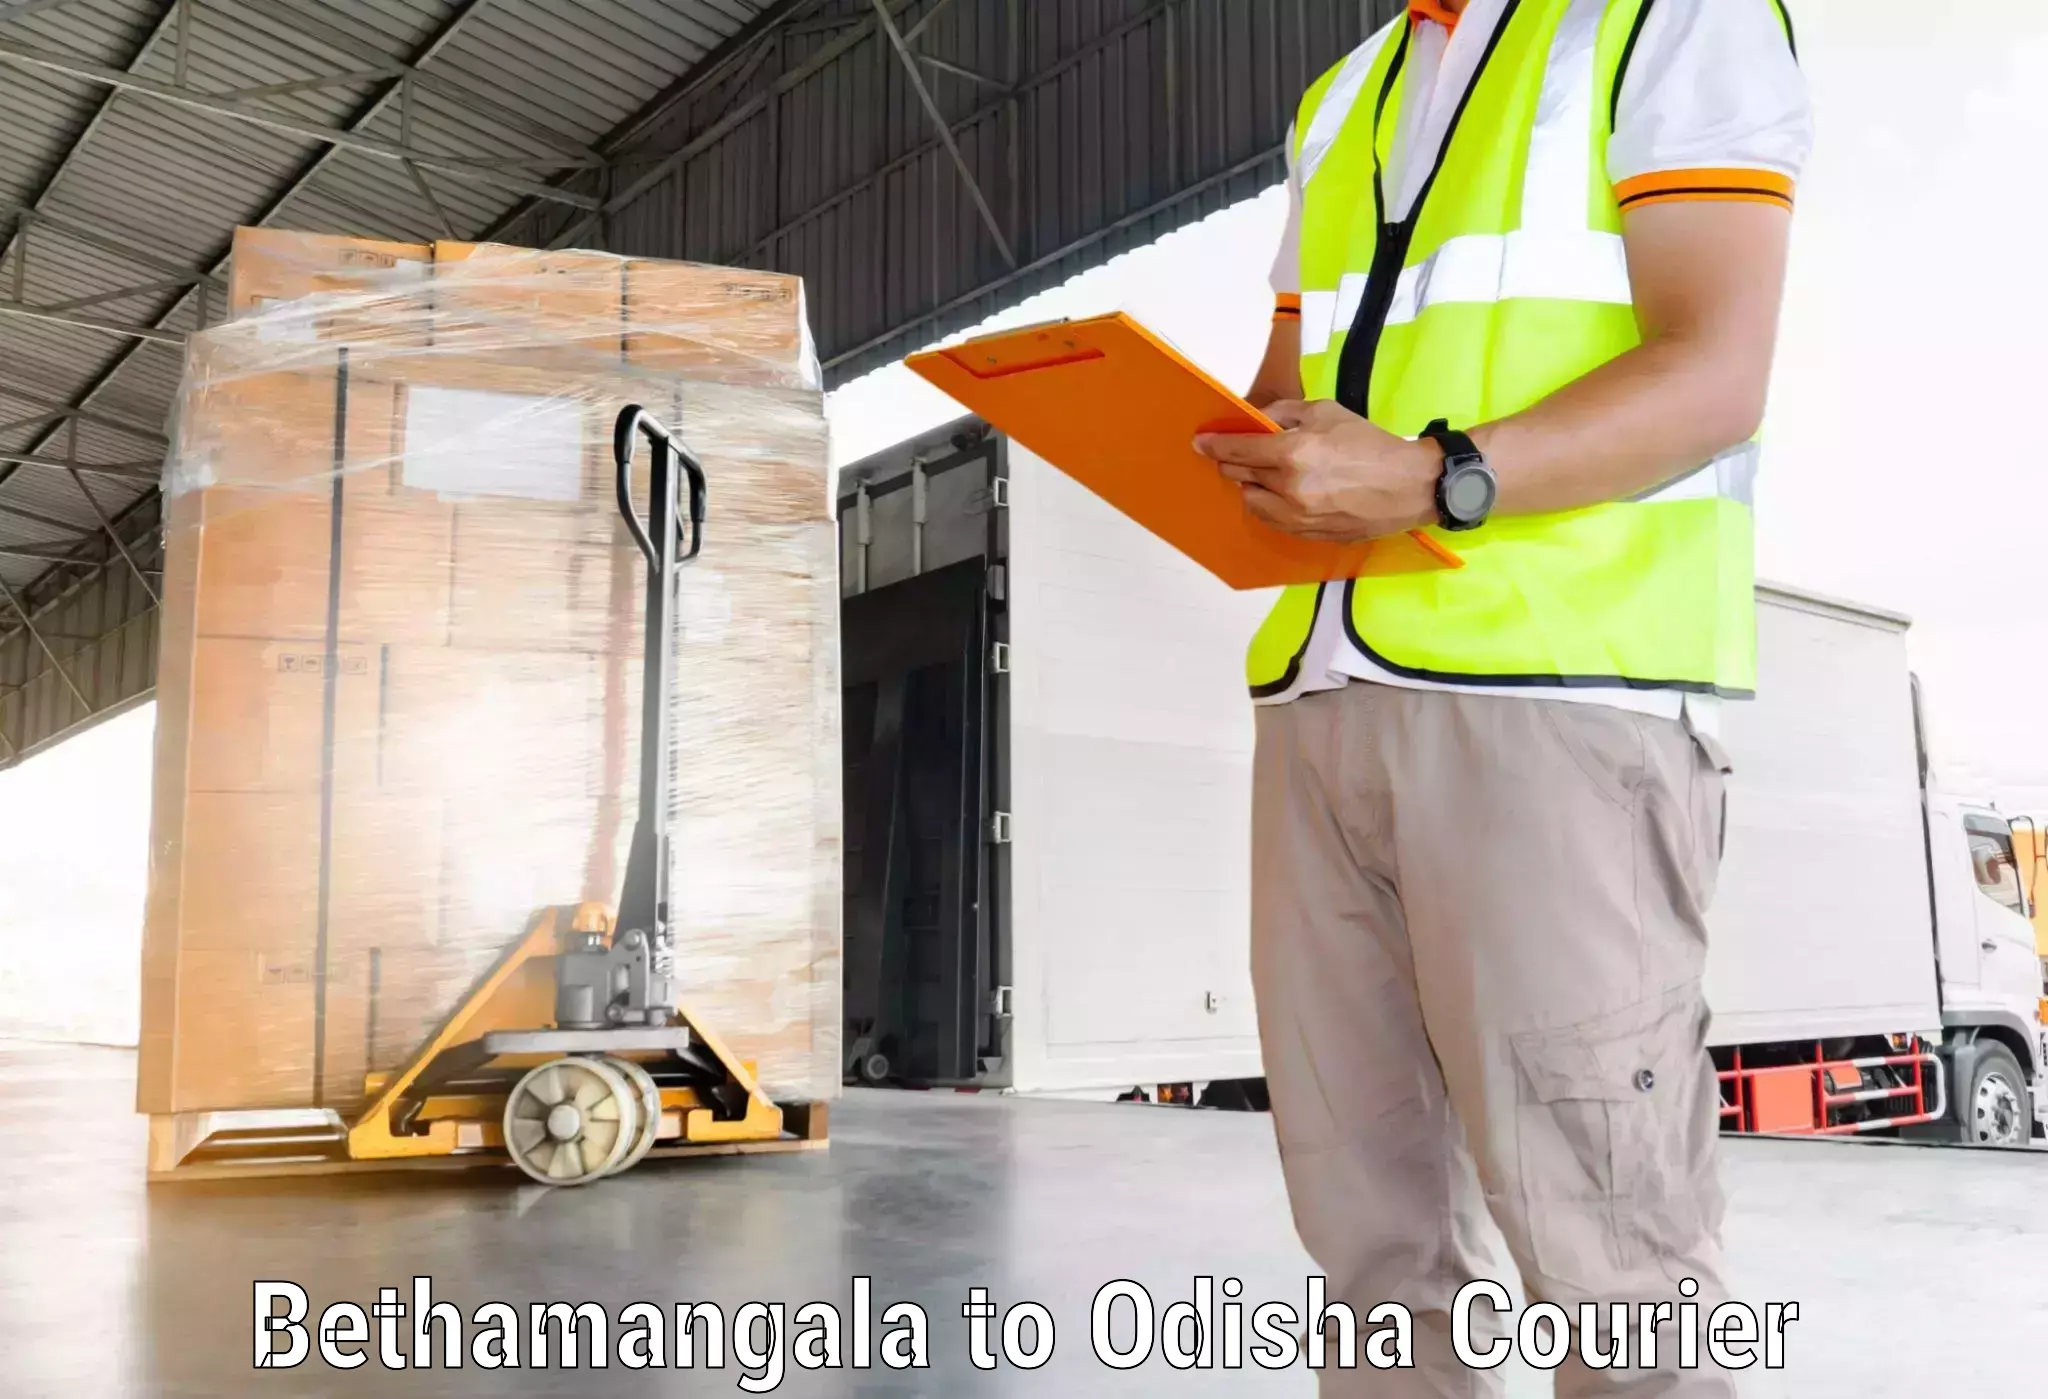 Business shipping needs Bethamangala to Tihidi